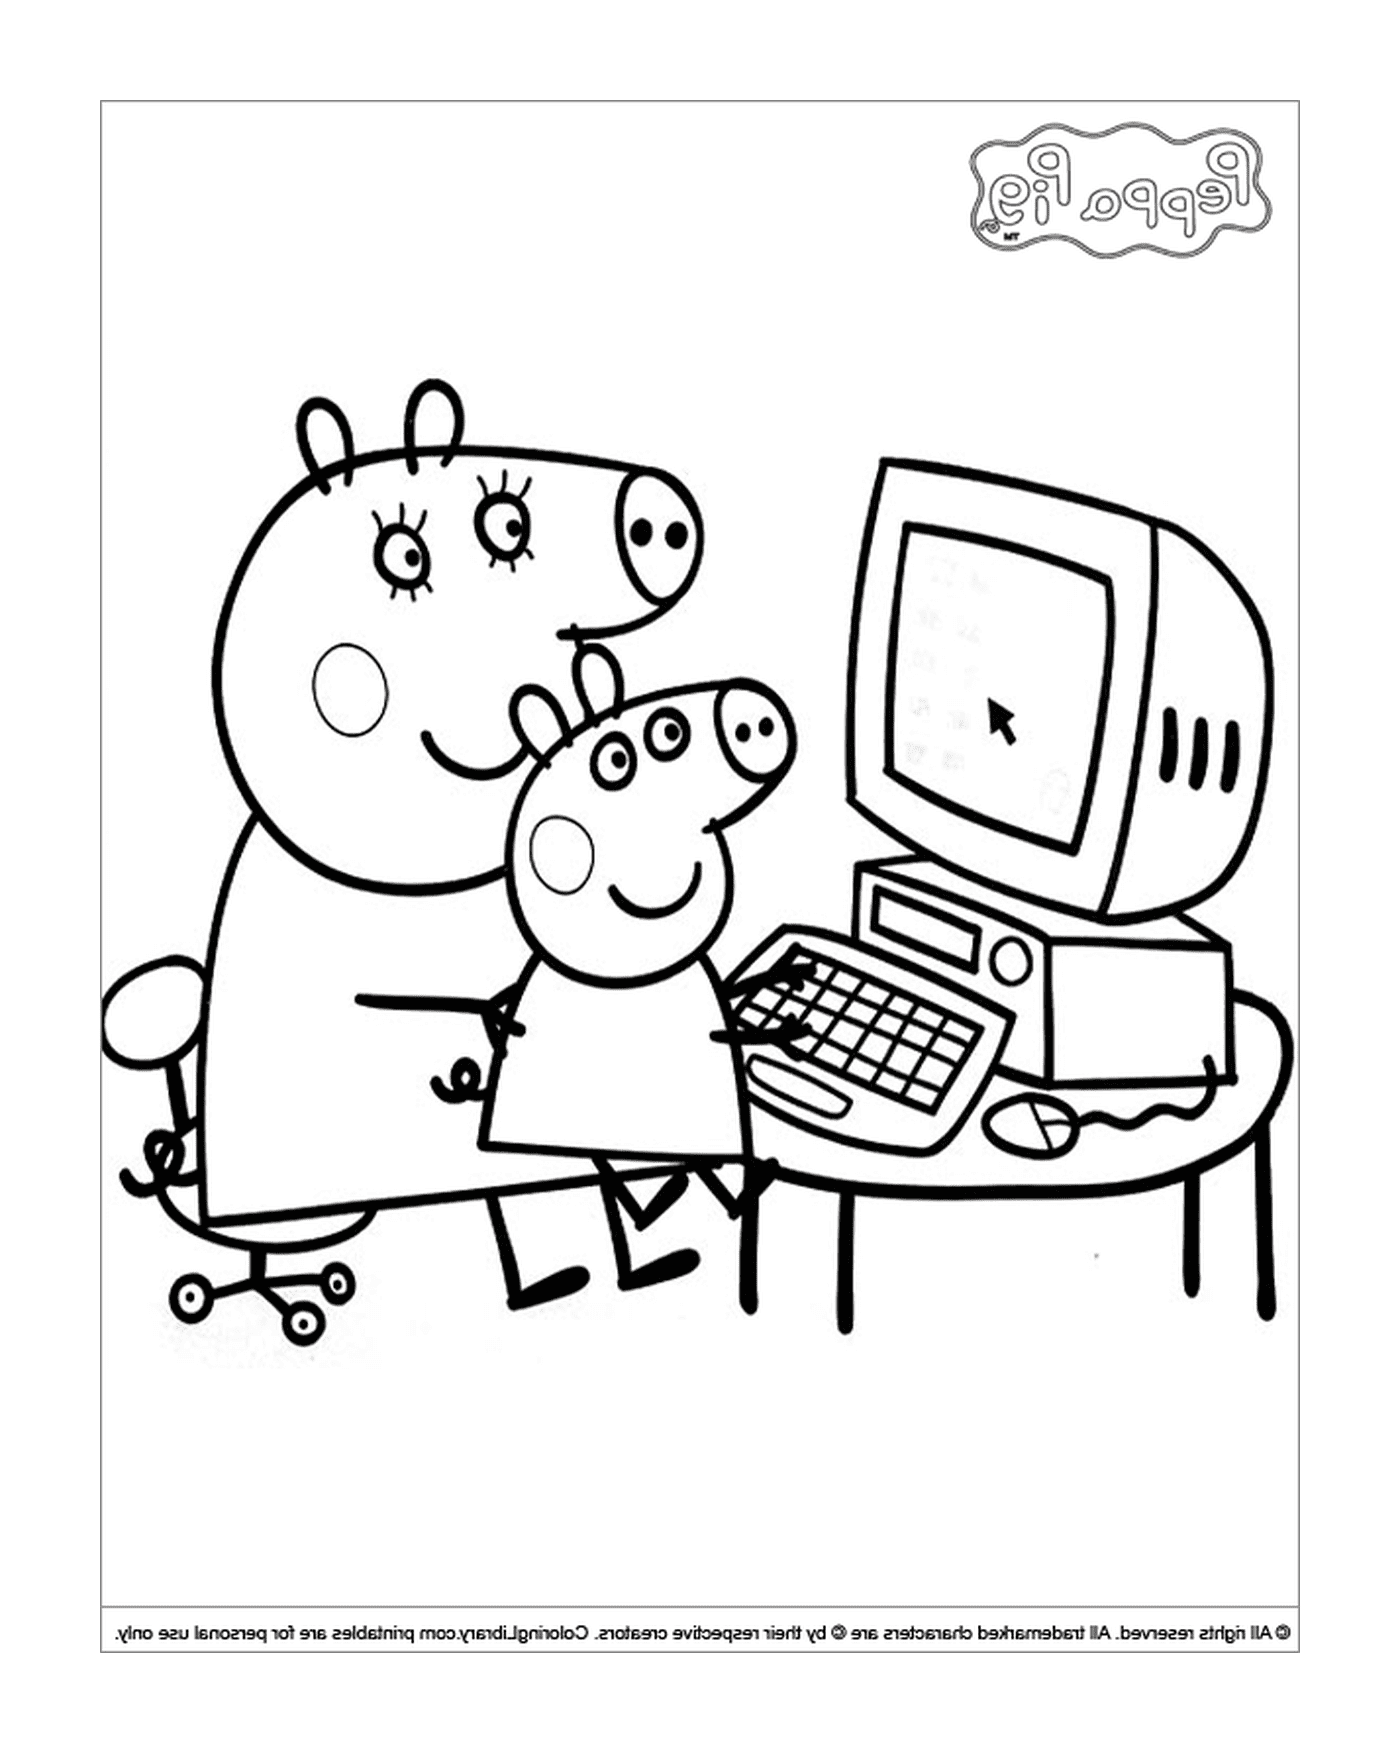  بيبابا خندق ووالده على الكمبيوتر 